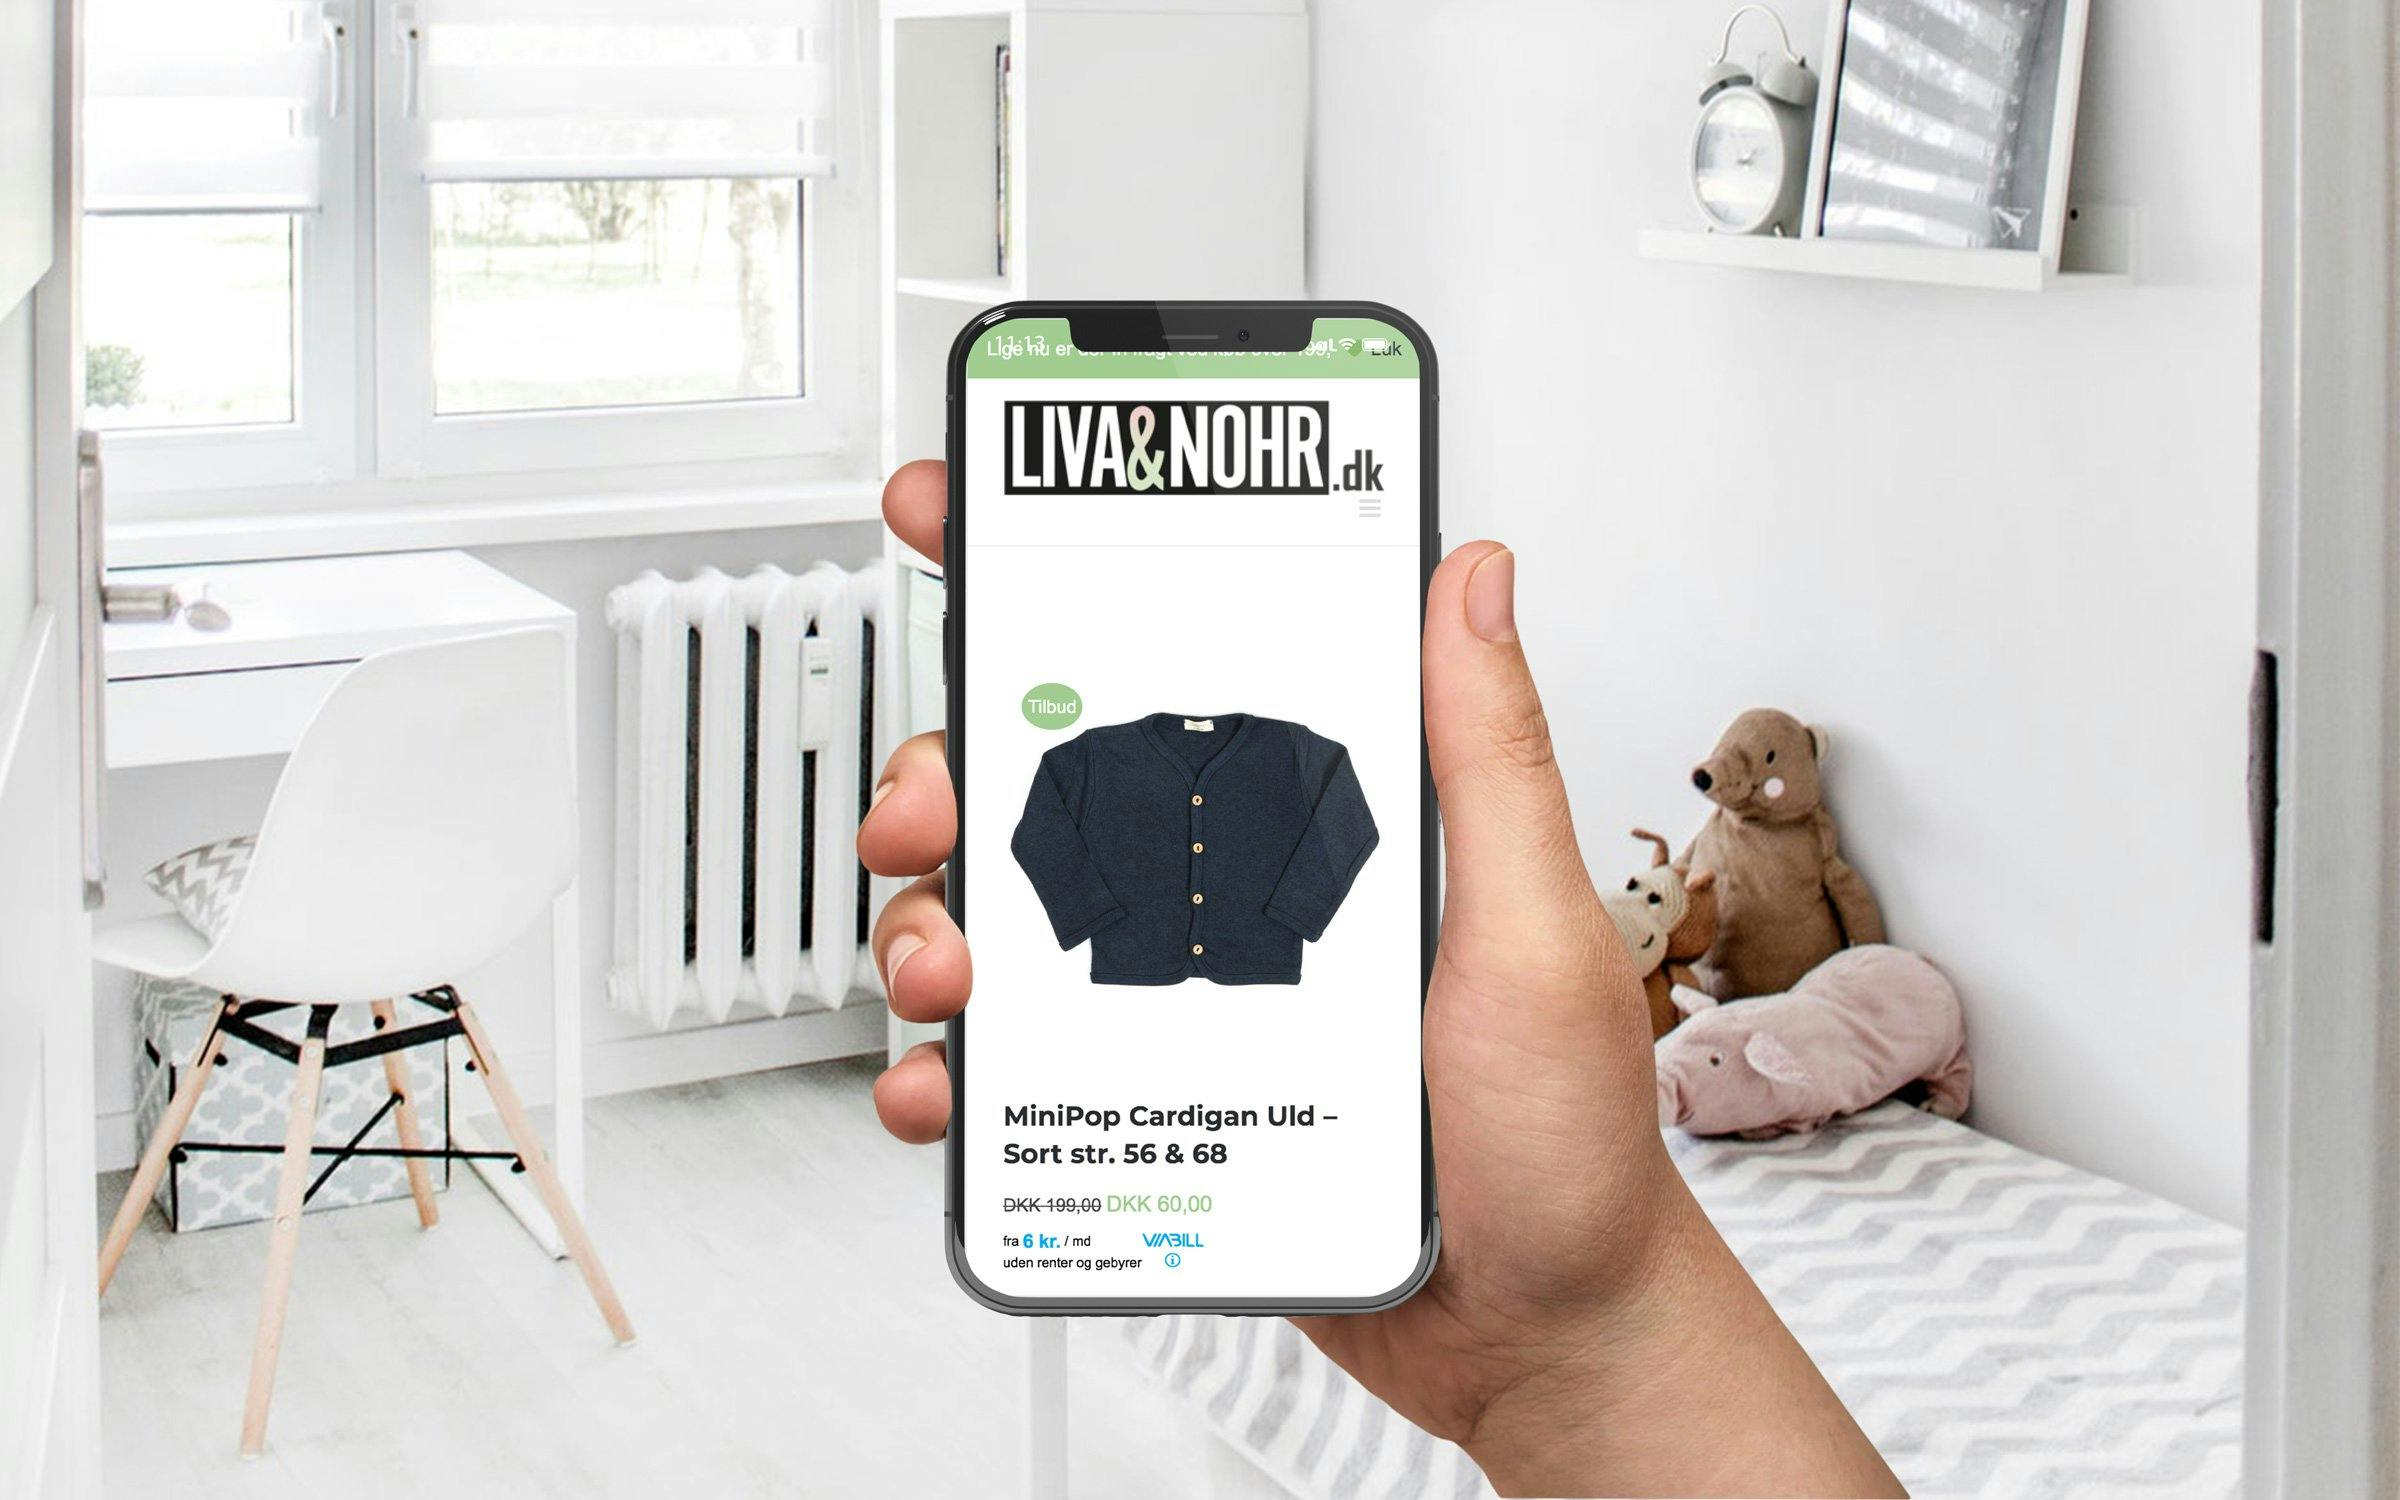 forestille Besiddelse skrot Webshop med børnetøj 0-4 år - Kvalitetsmærker fra danske leverandører